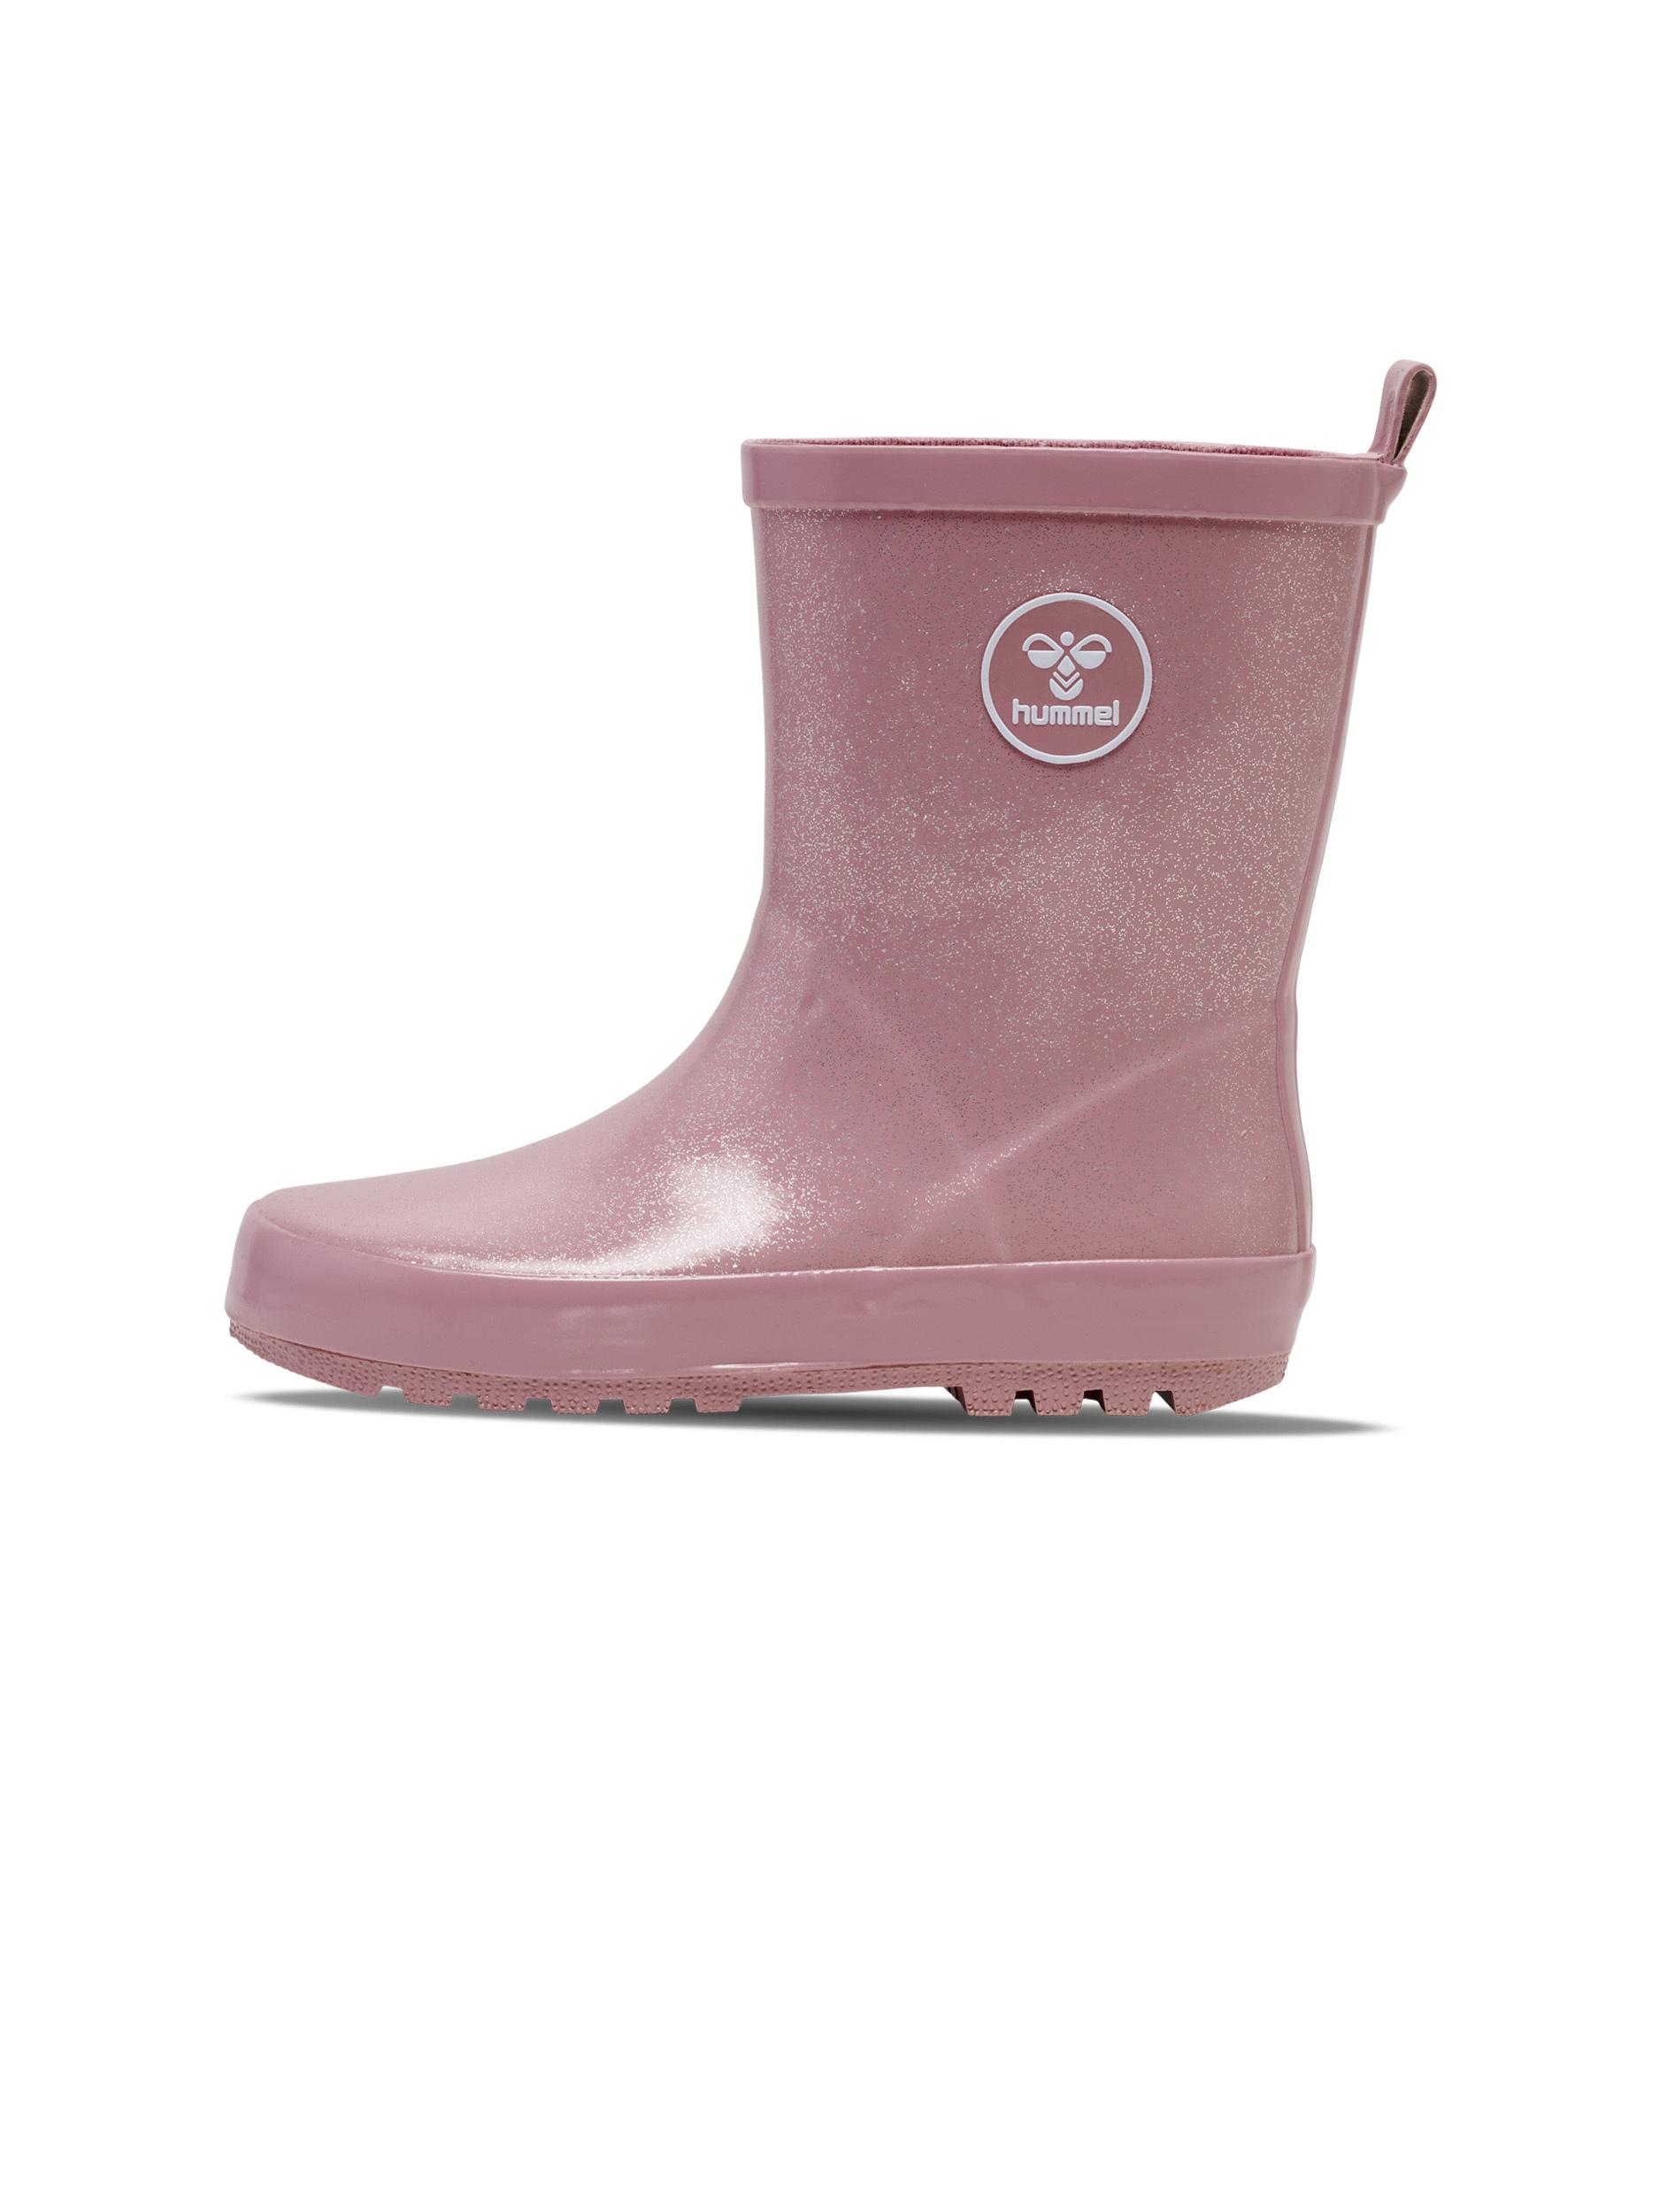 Boots & Stiefel für Kinder in rosa im Online Shop von SportScheck kaufen | Stiefel